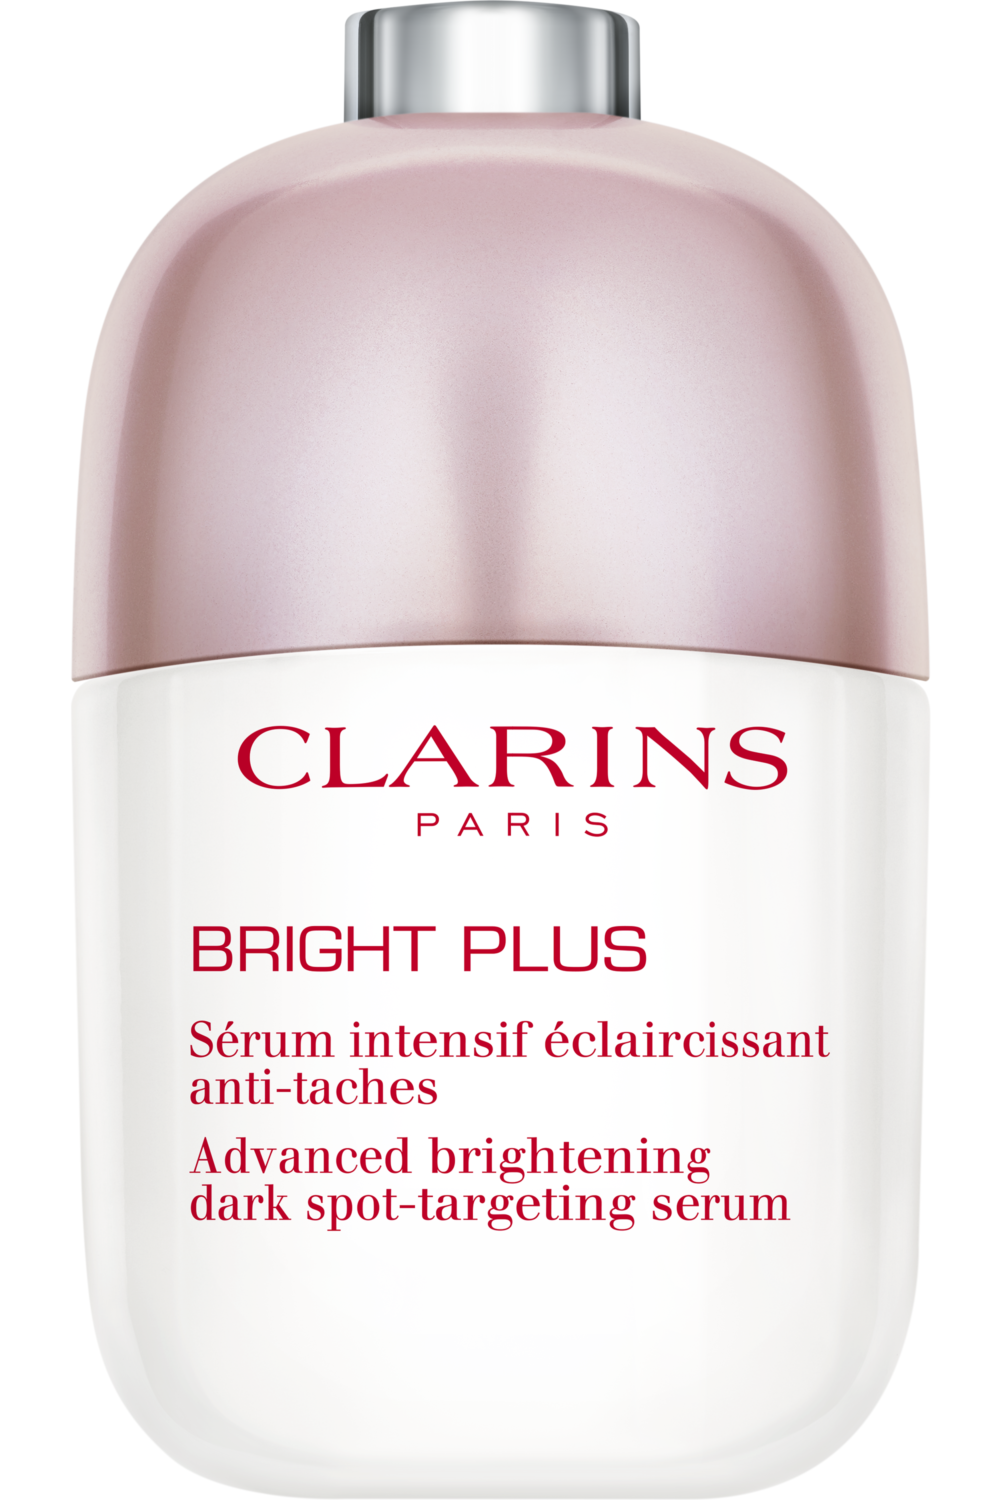 Clarins - Sérum intensif éclaircissant anti-taches Bright Plus